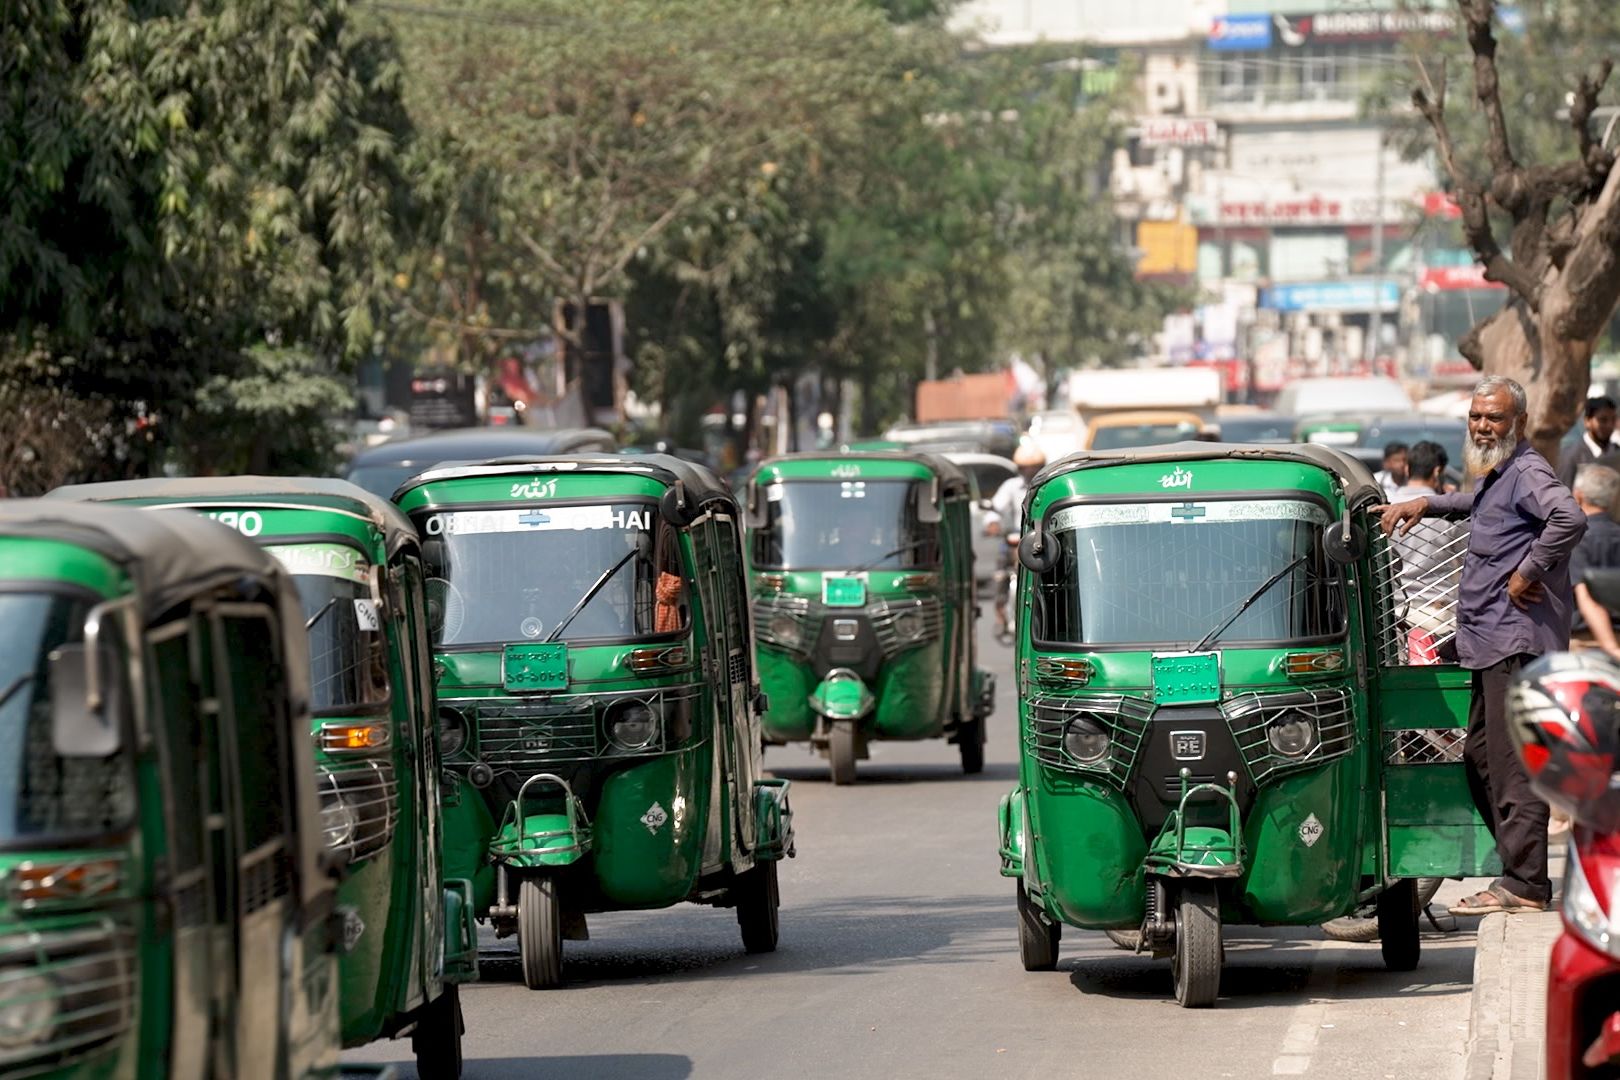 Một công ty khởi nghiệp ở Bangladesh đang có kế hoạch biến khoảng 2,5 triệu xe tuk tuk điện thành nhà máy điện ảo. Ảnh: CNN